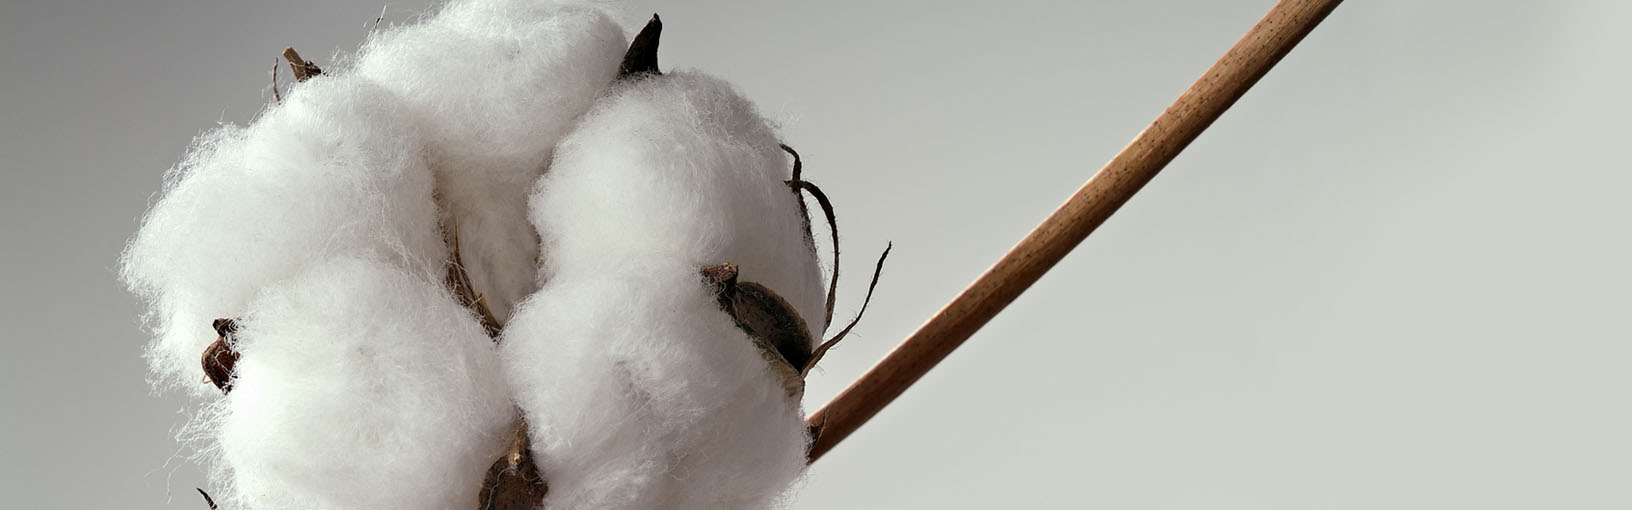 Garn af høj kvalitet til strikning, hækling og filtning LANA GROSSA<br> uld & garn | Nyheder